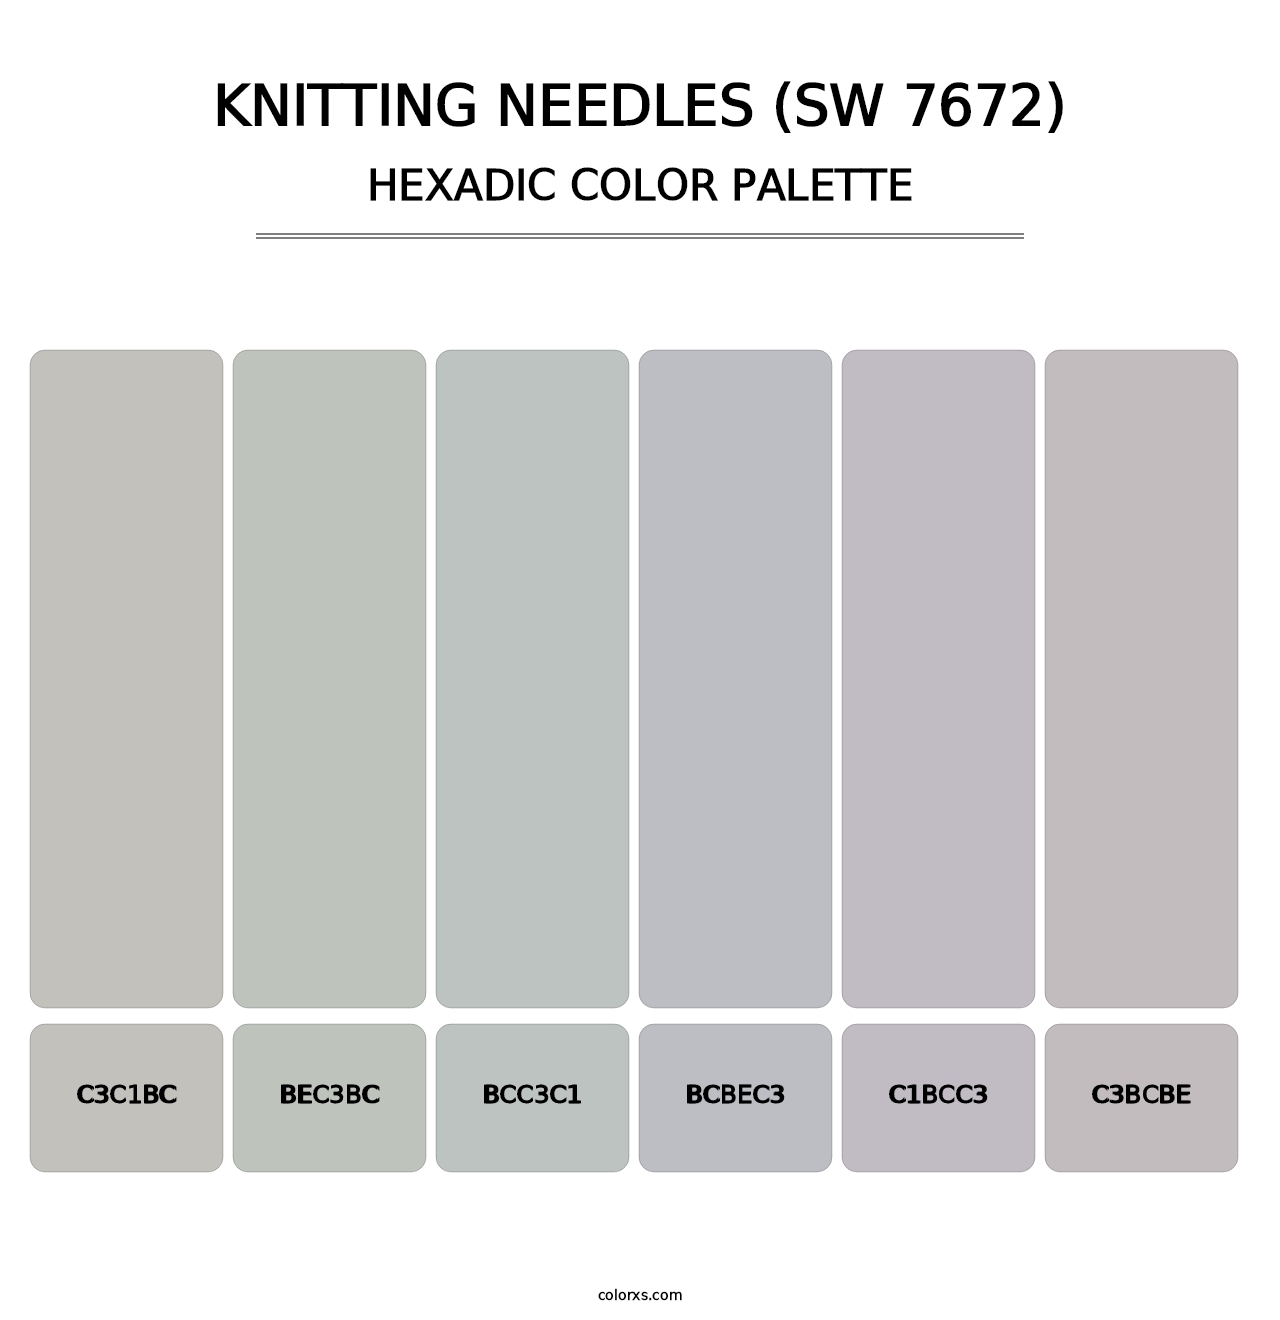 Knitting Needles (SW 7672) - Hexadic Color Palette